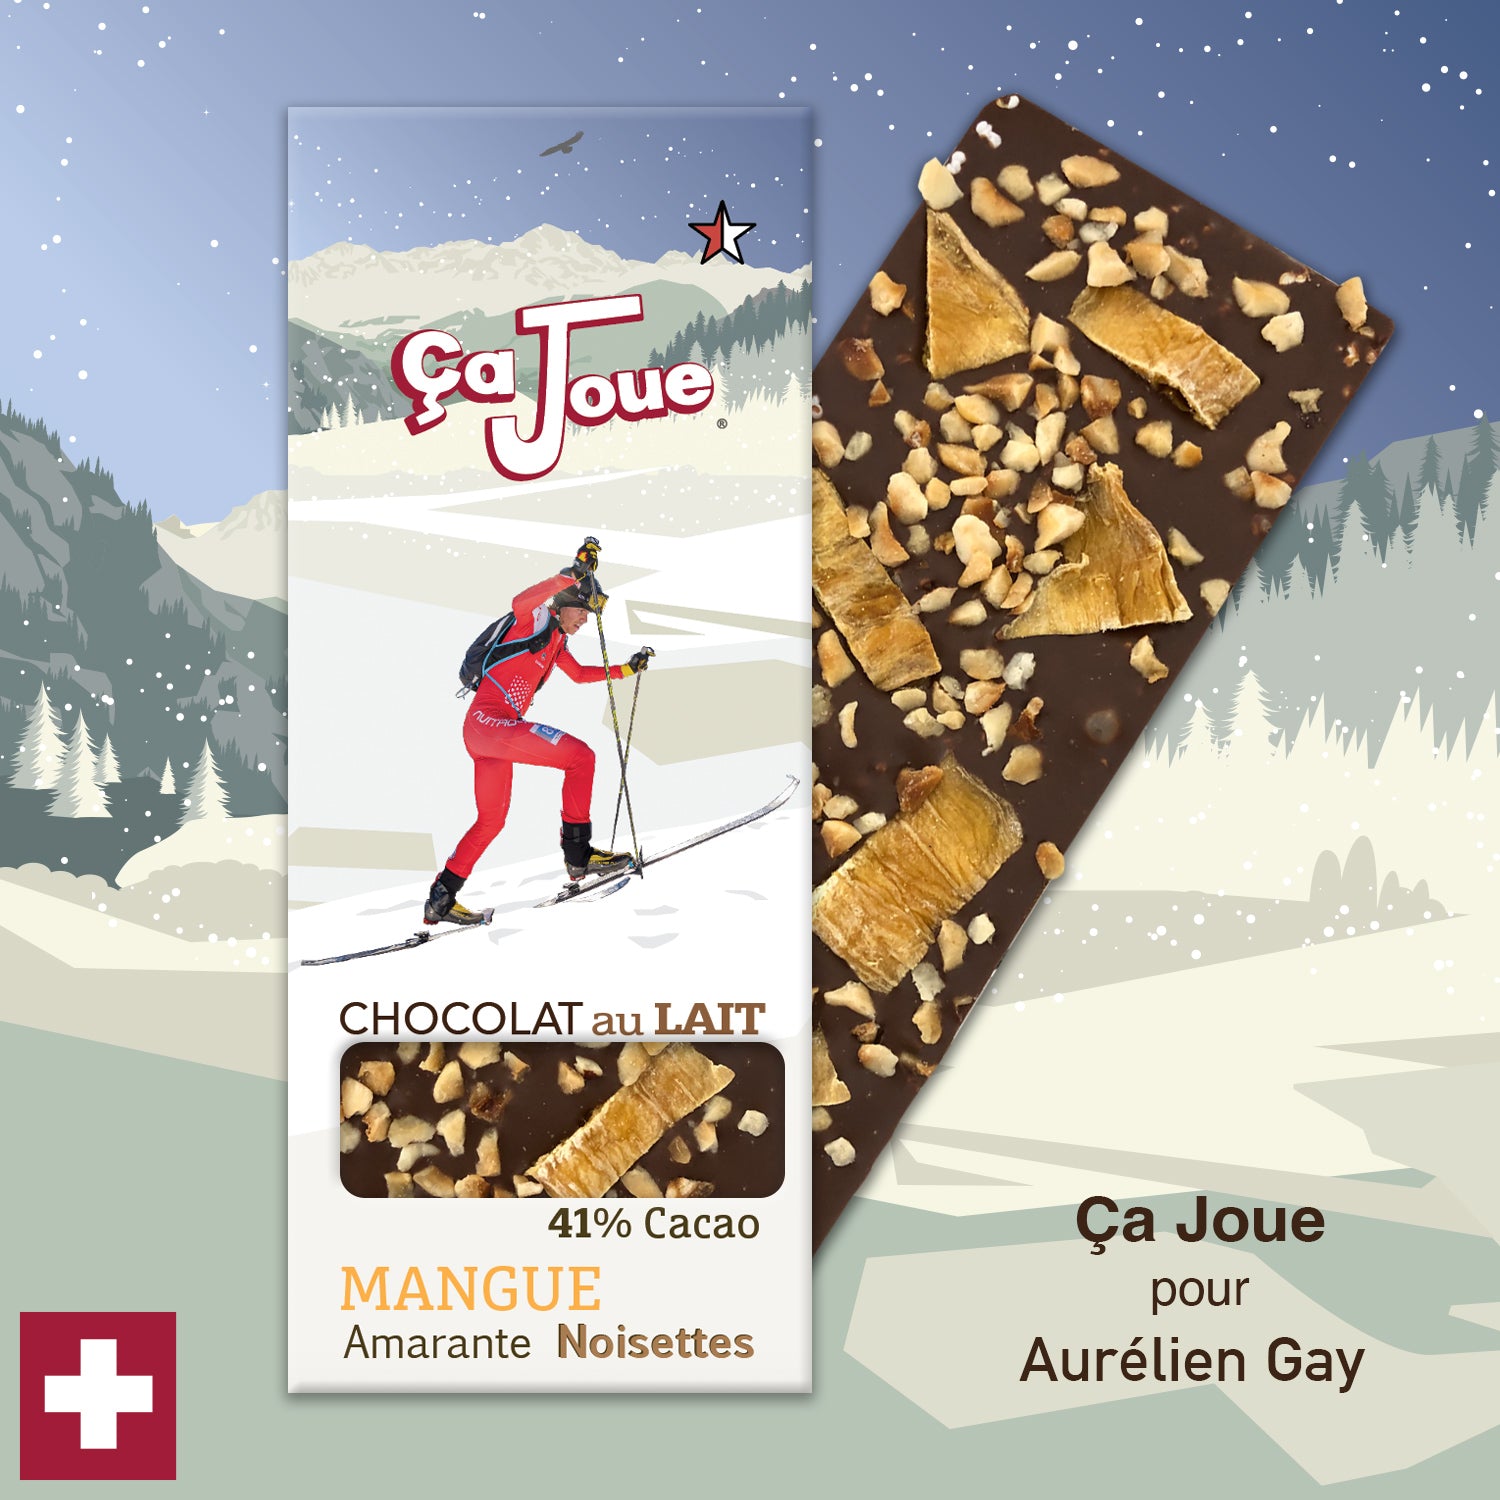 Ça Joue pour Aurélien Gay (Ref-N1) Chocolat du Val de Bagnes